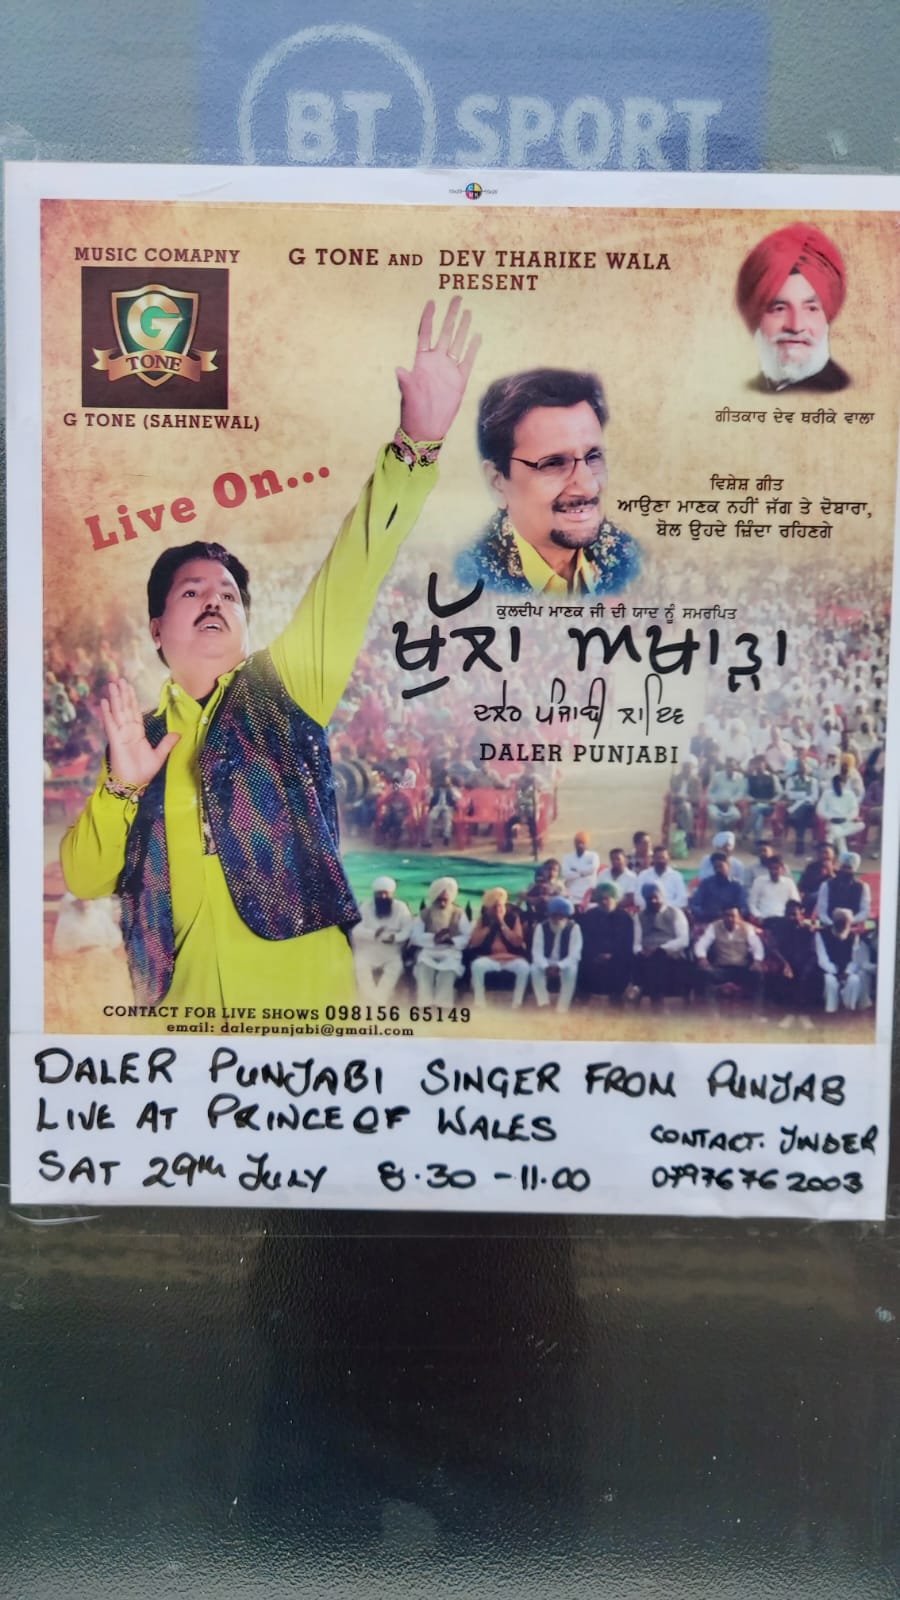 Daler Punjabi singer from Punjab live at Prince of Wales